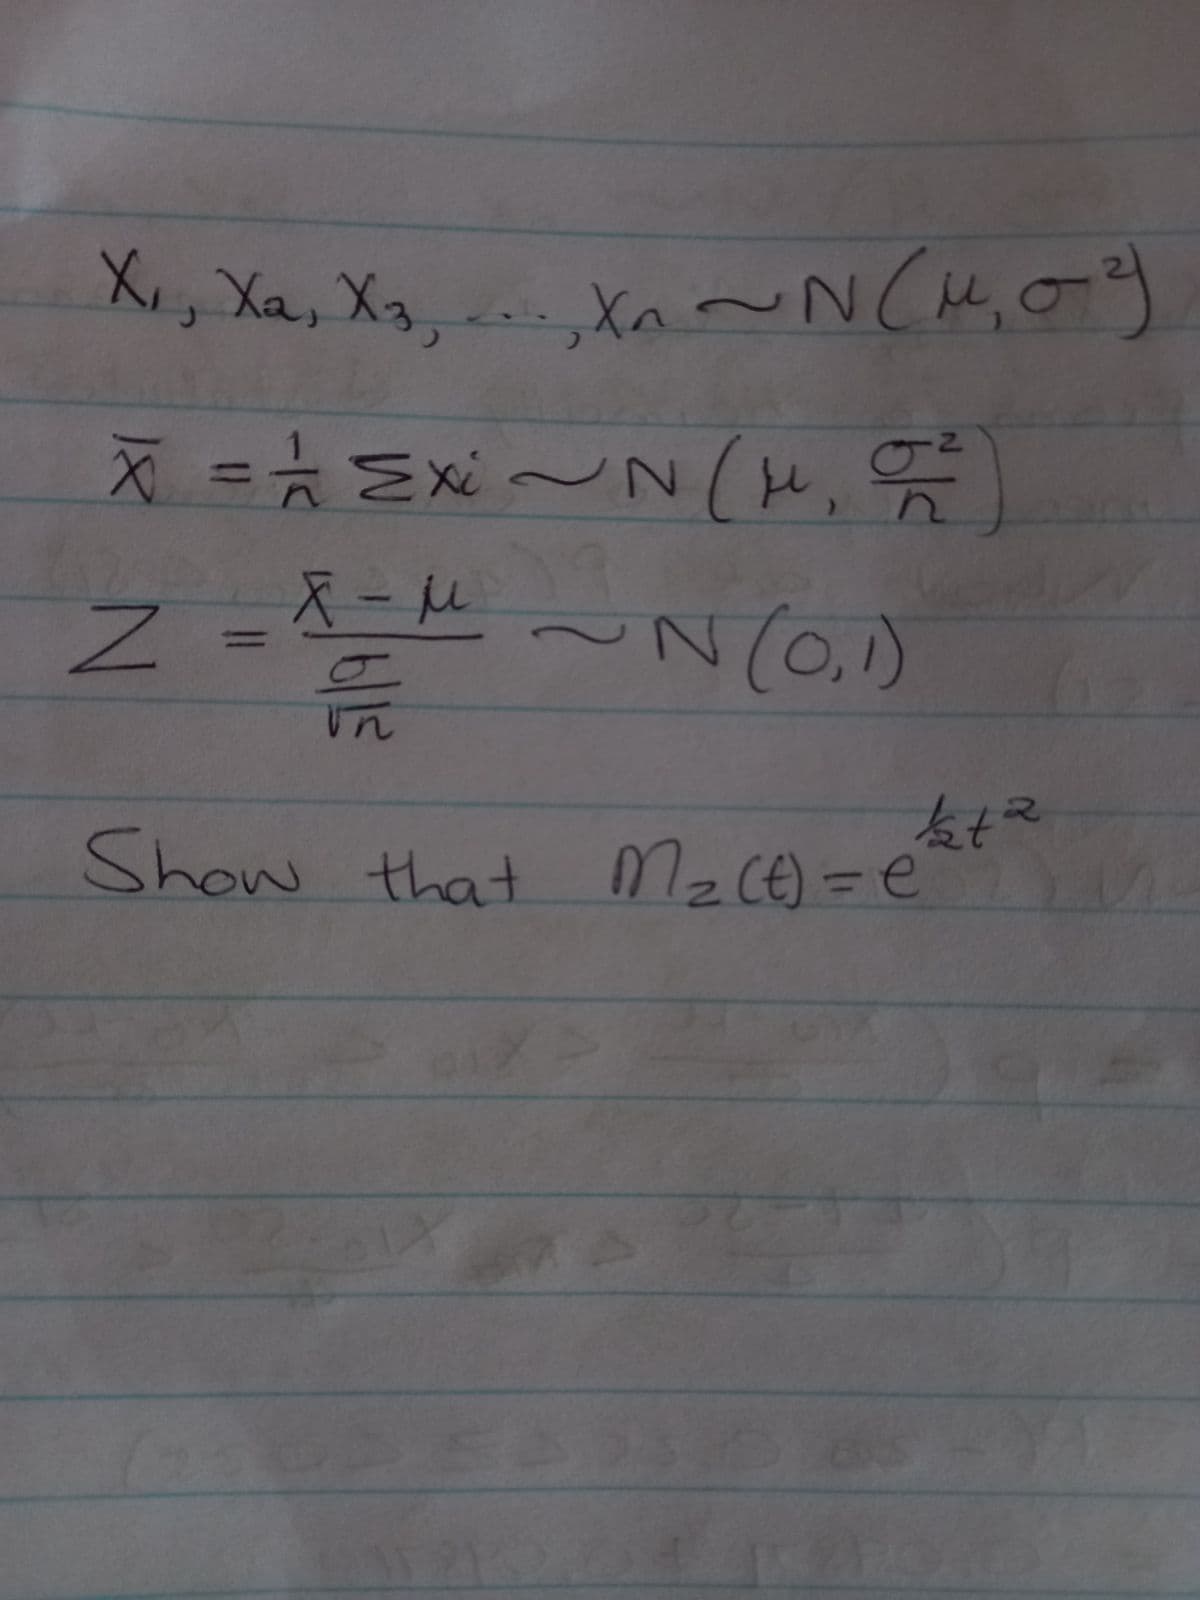 X₁, Xa, X₂, ..., X₁ ~ N(M₁0-3
N X1
X = 1 Exi ~ N(H₂O²)
=M~N (0,1)
n-X
51/9
1/2+²
2=(7) ²2 tot moys
S